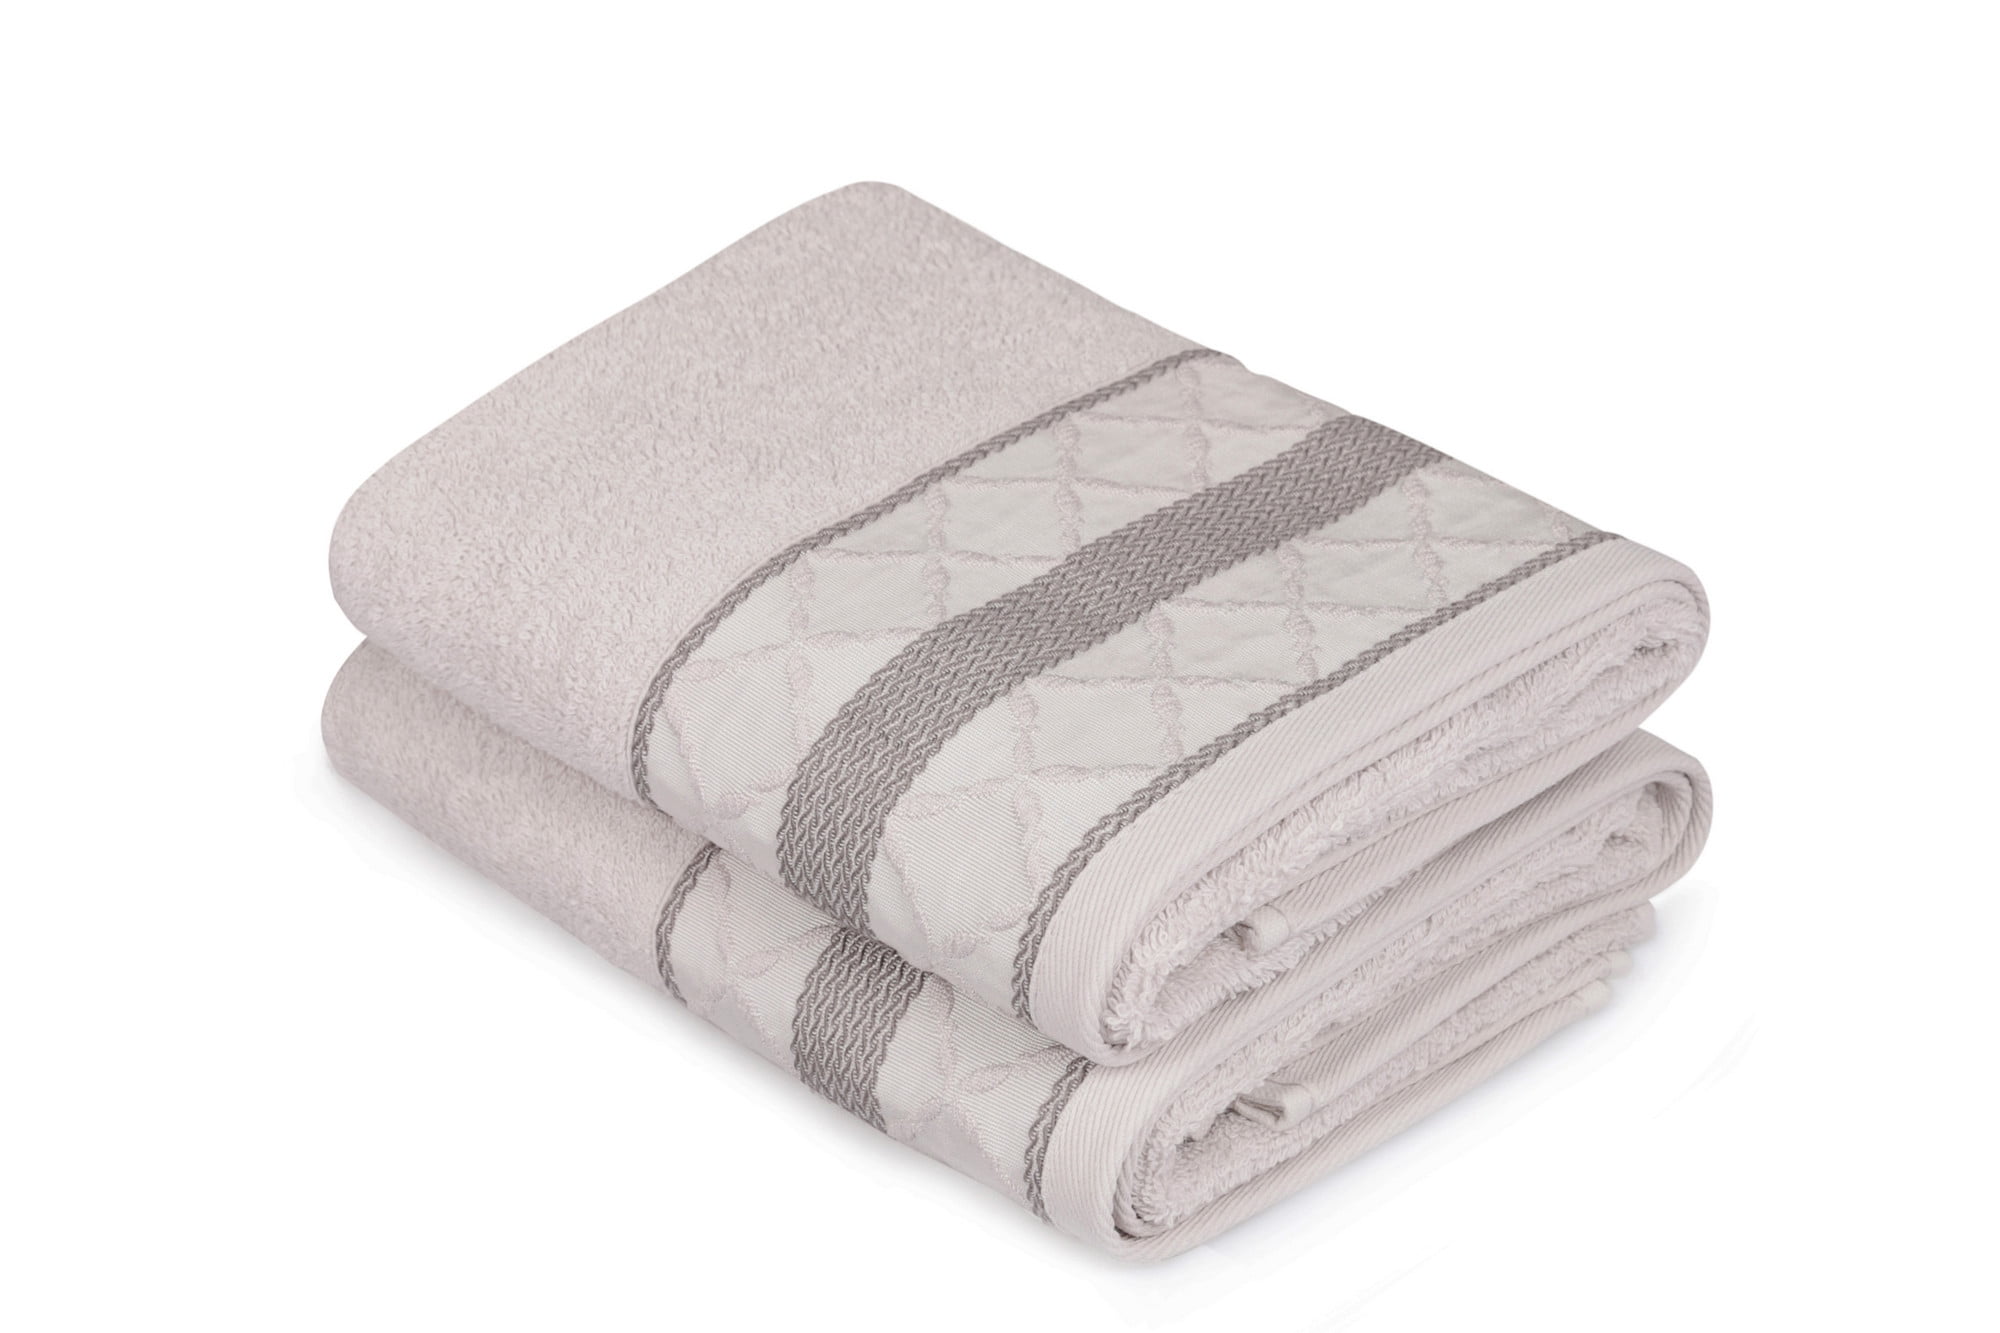 POMPOM 100% Egyptian Cotton 2PK DESIGNER Soft 600 Gsm Towel Absorbent Towels Set 